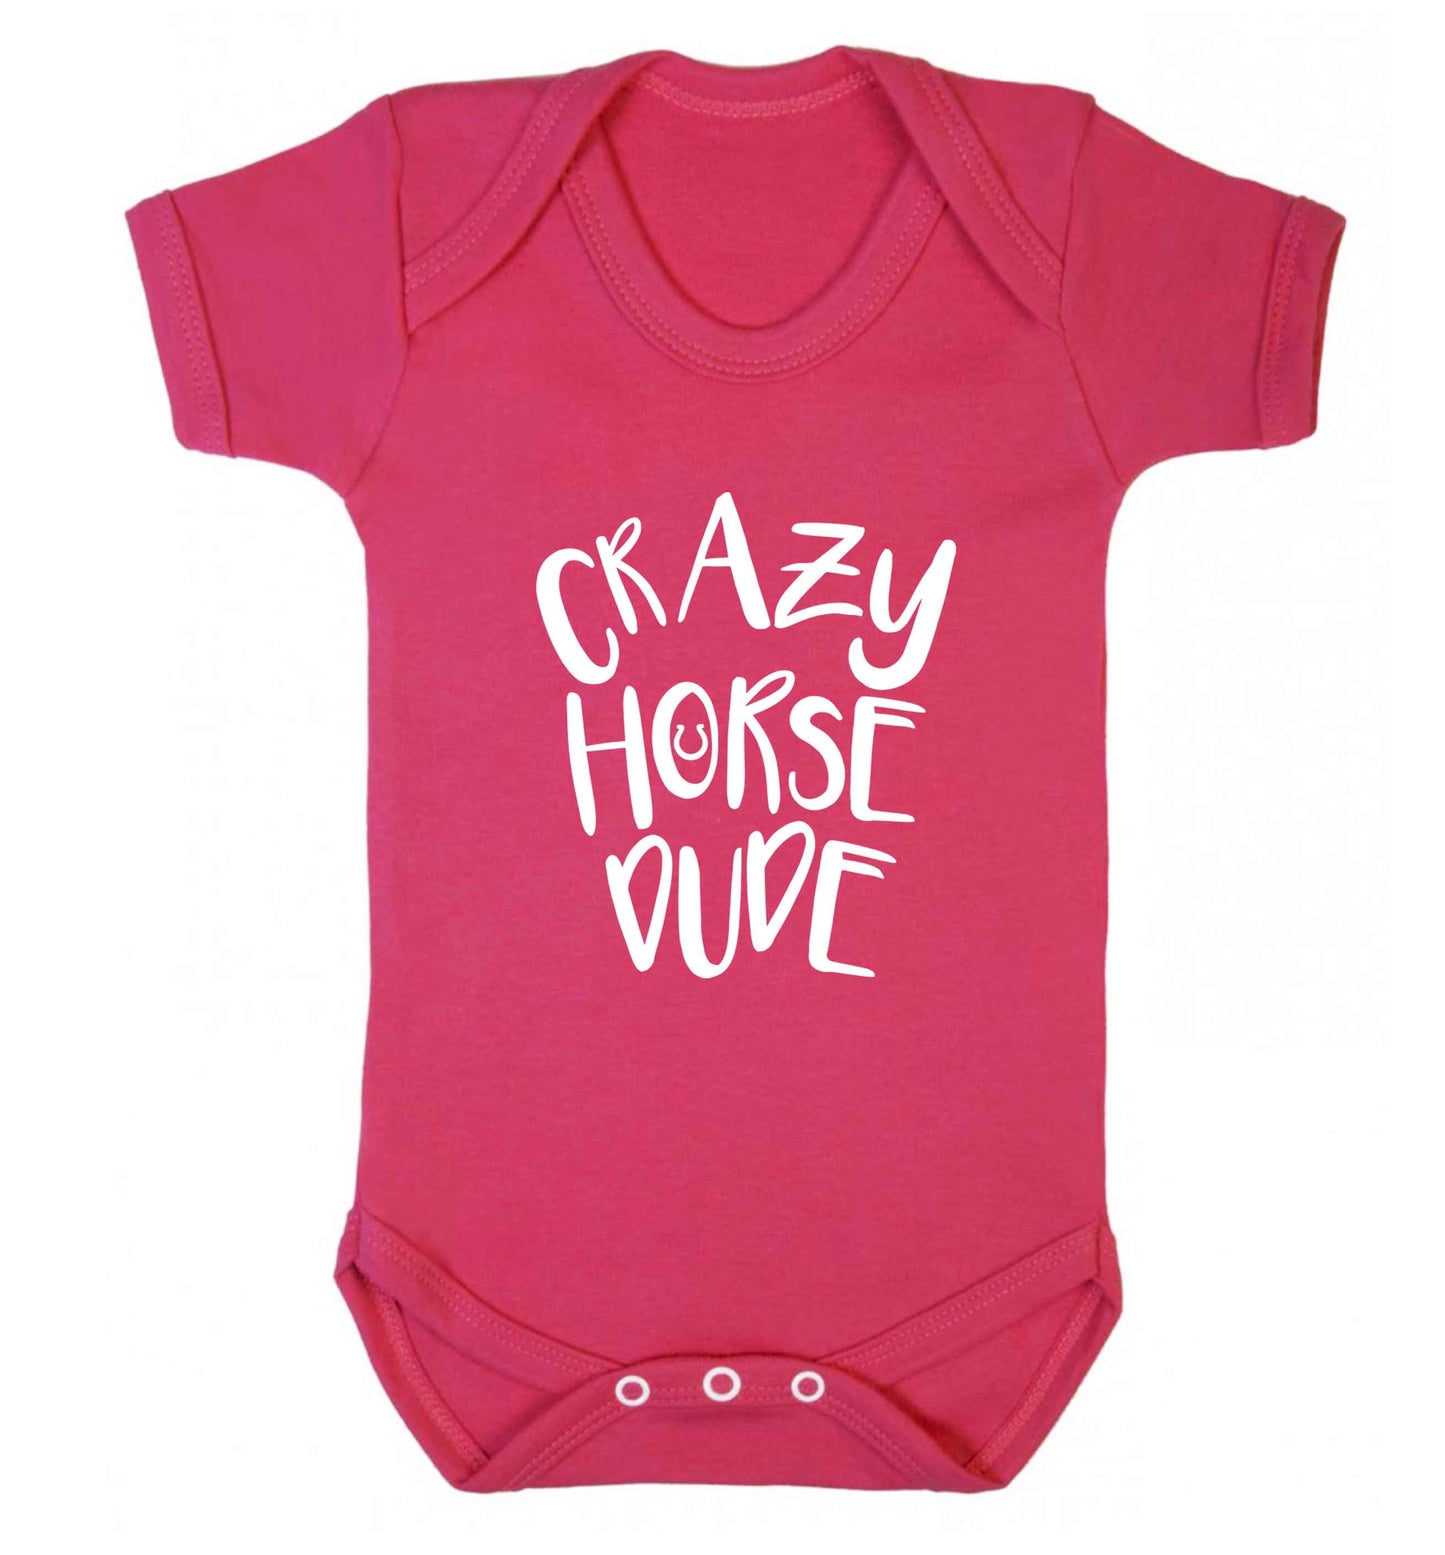 Crazy horse dude baby vest dark pink 18-24 months